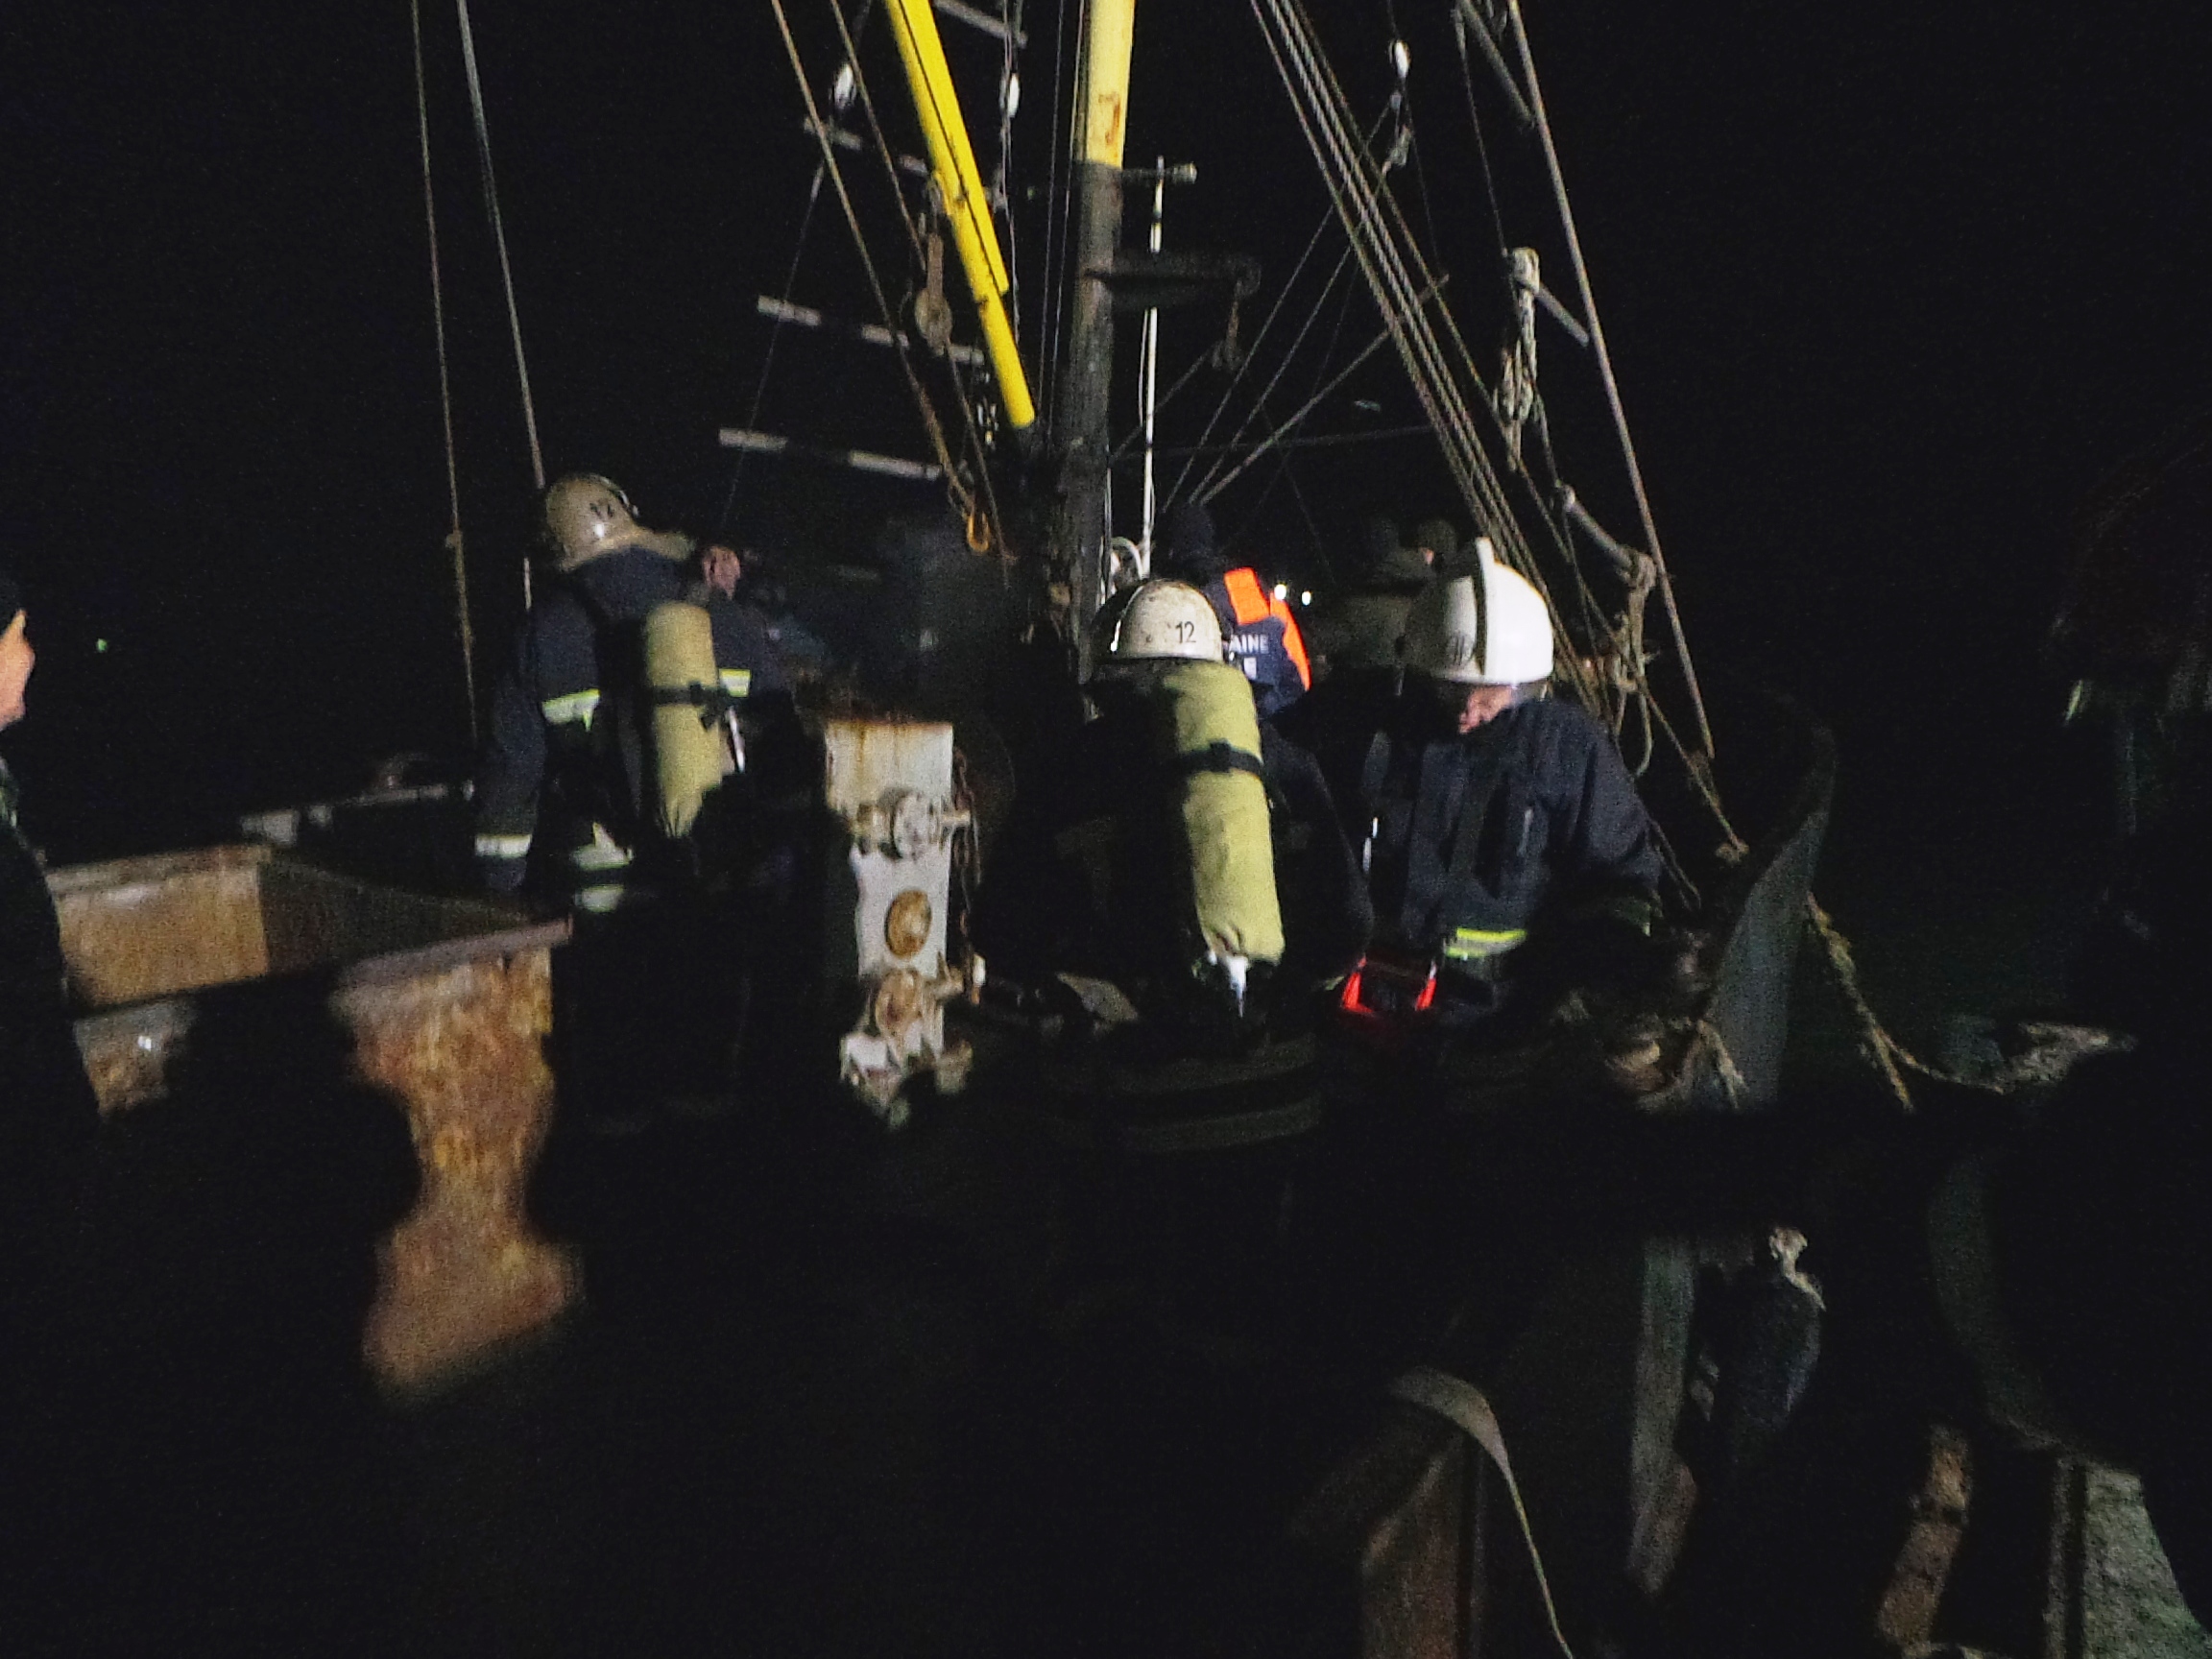 ЧП на запорожском курорте: в открытом море загорелось судно с рыбаками на борту (ФОТО)